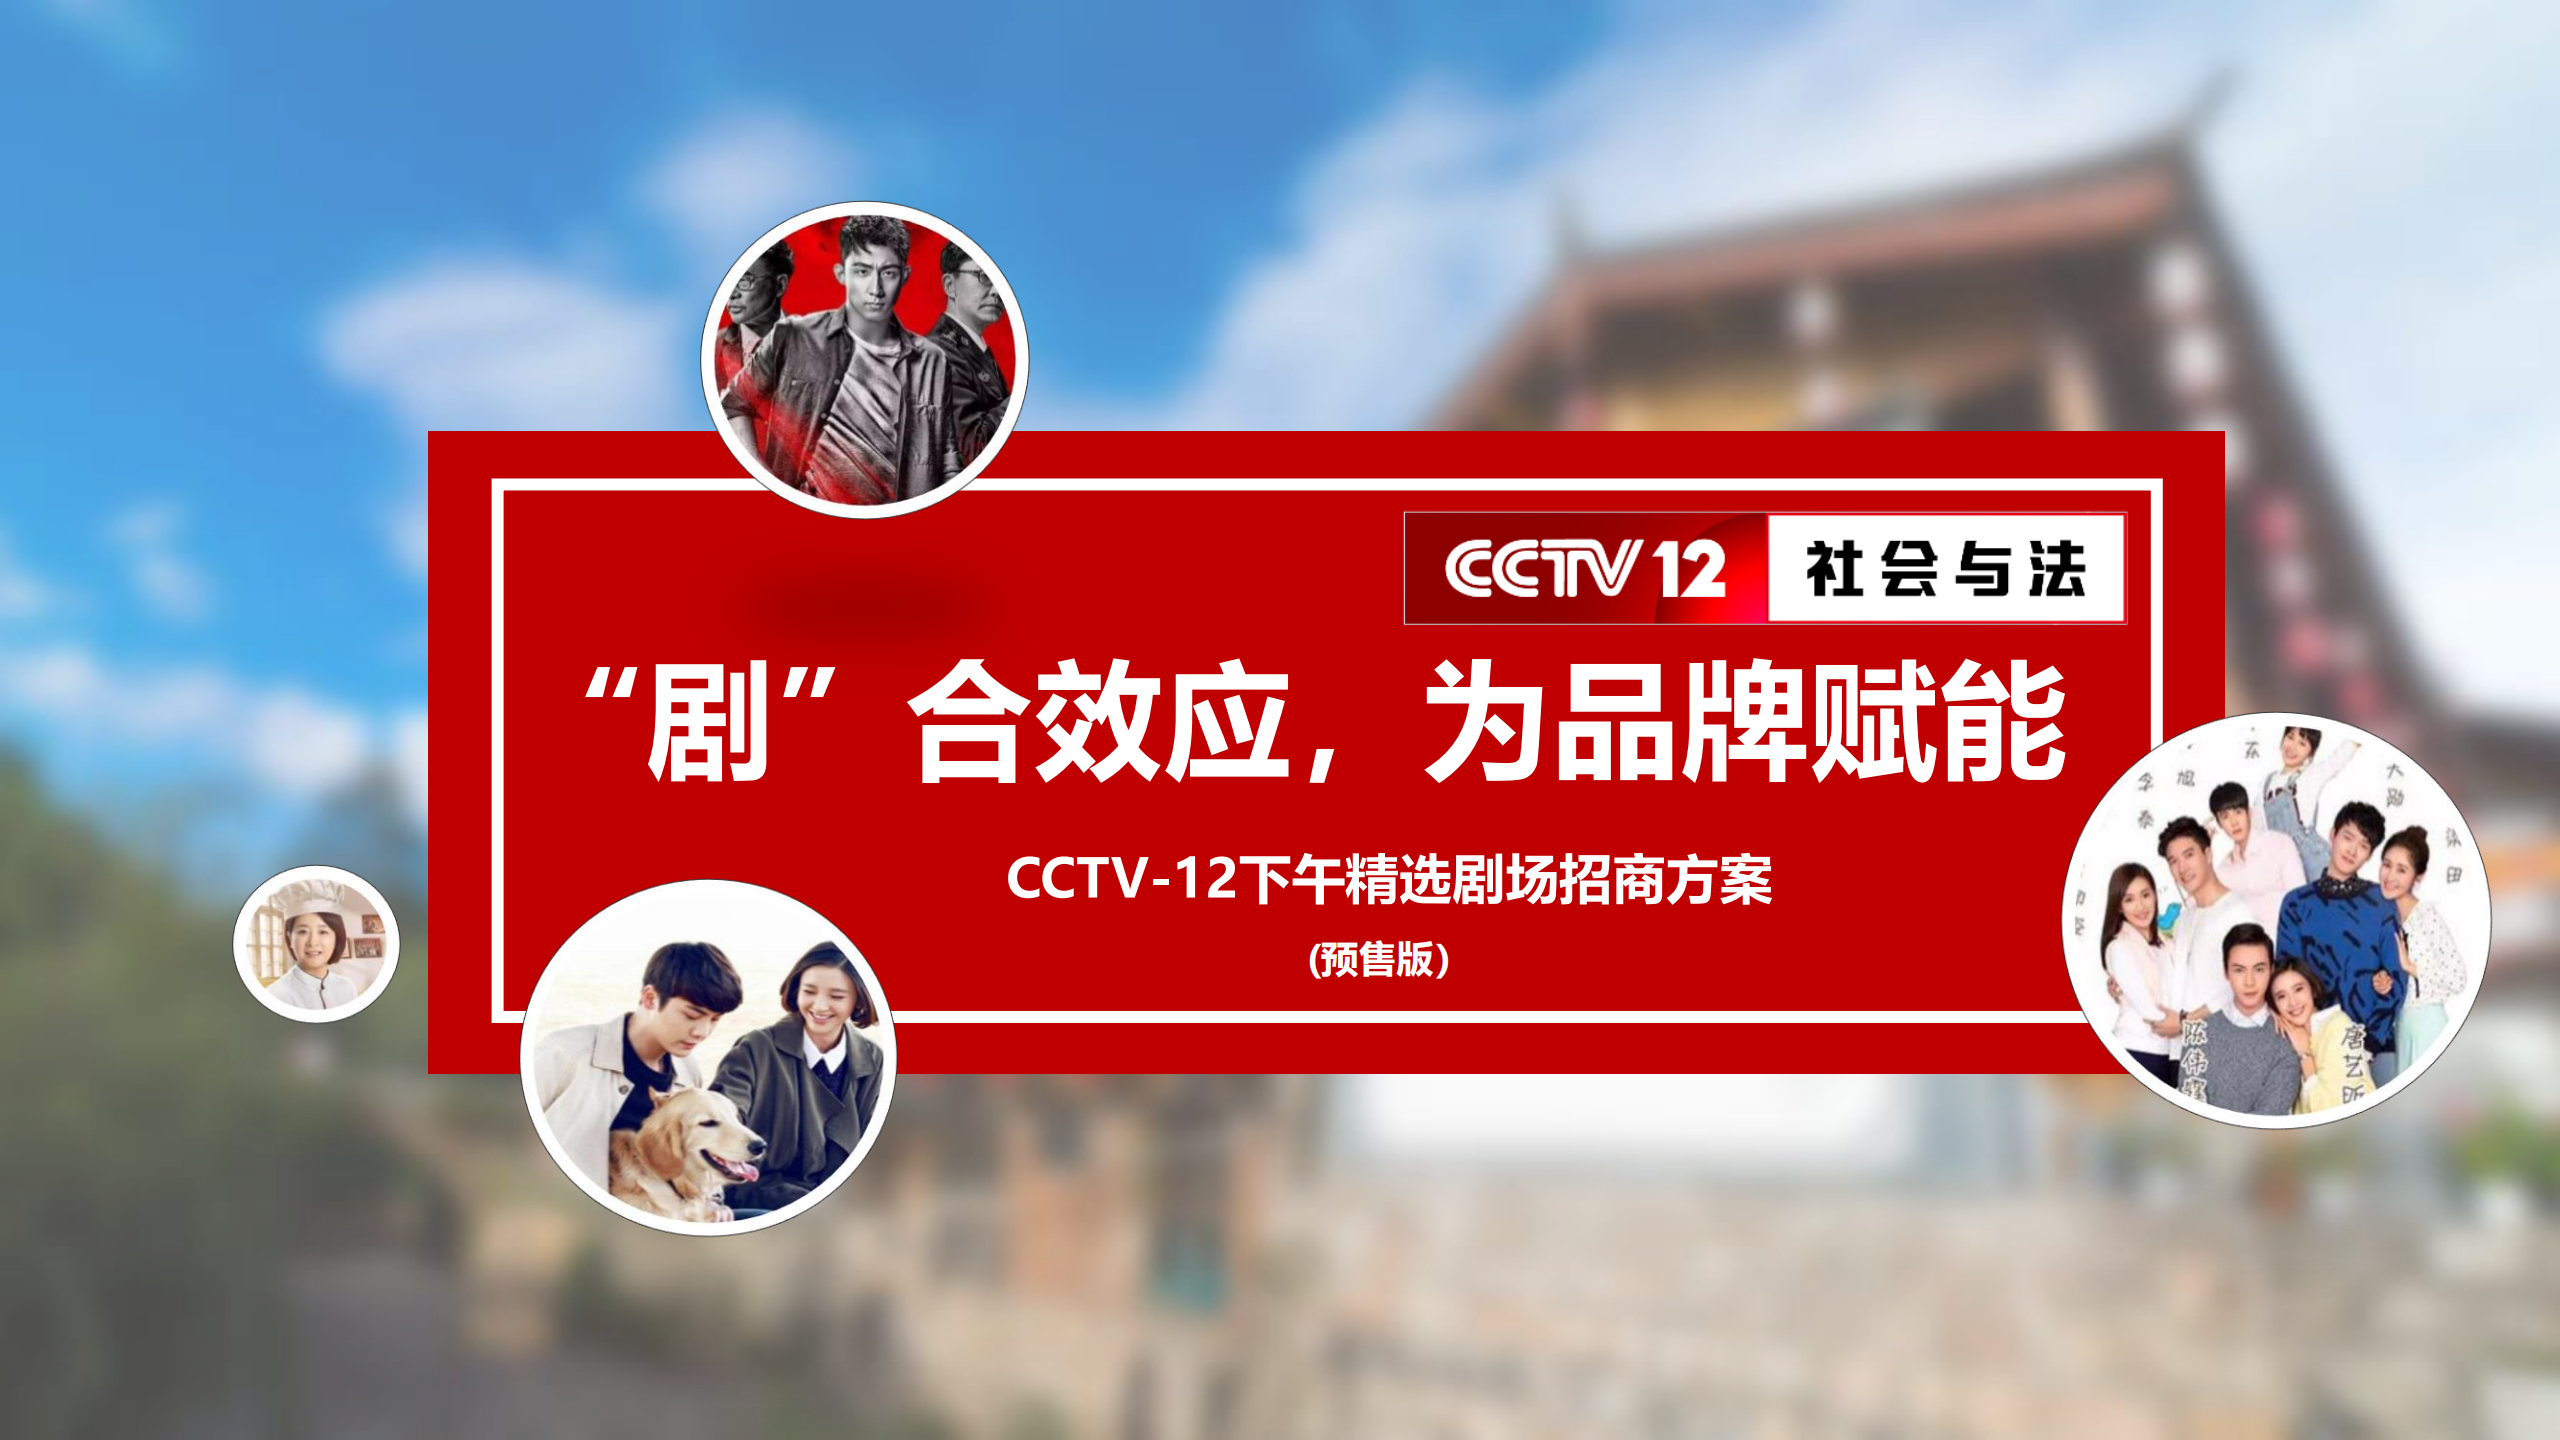 2021年CCTV-12《下午剧场》招商方案